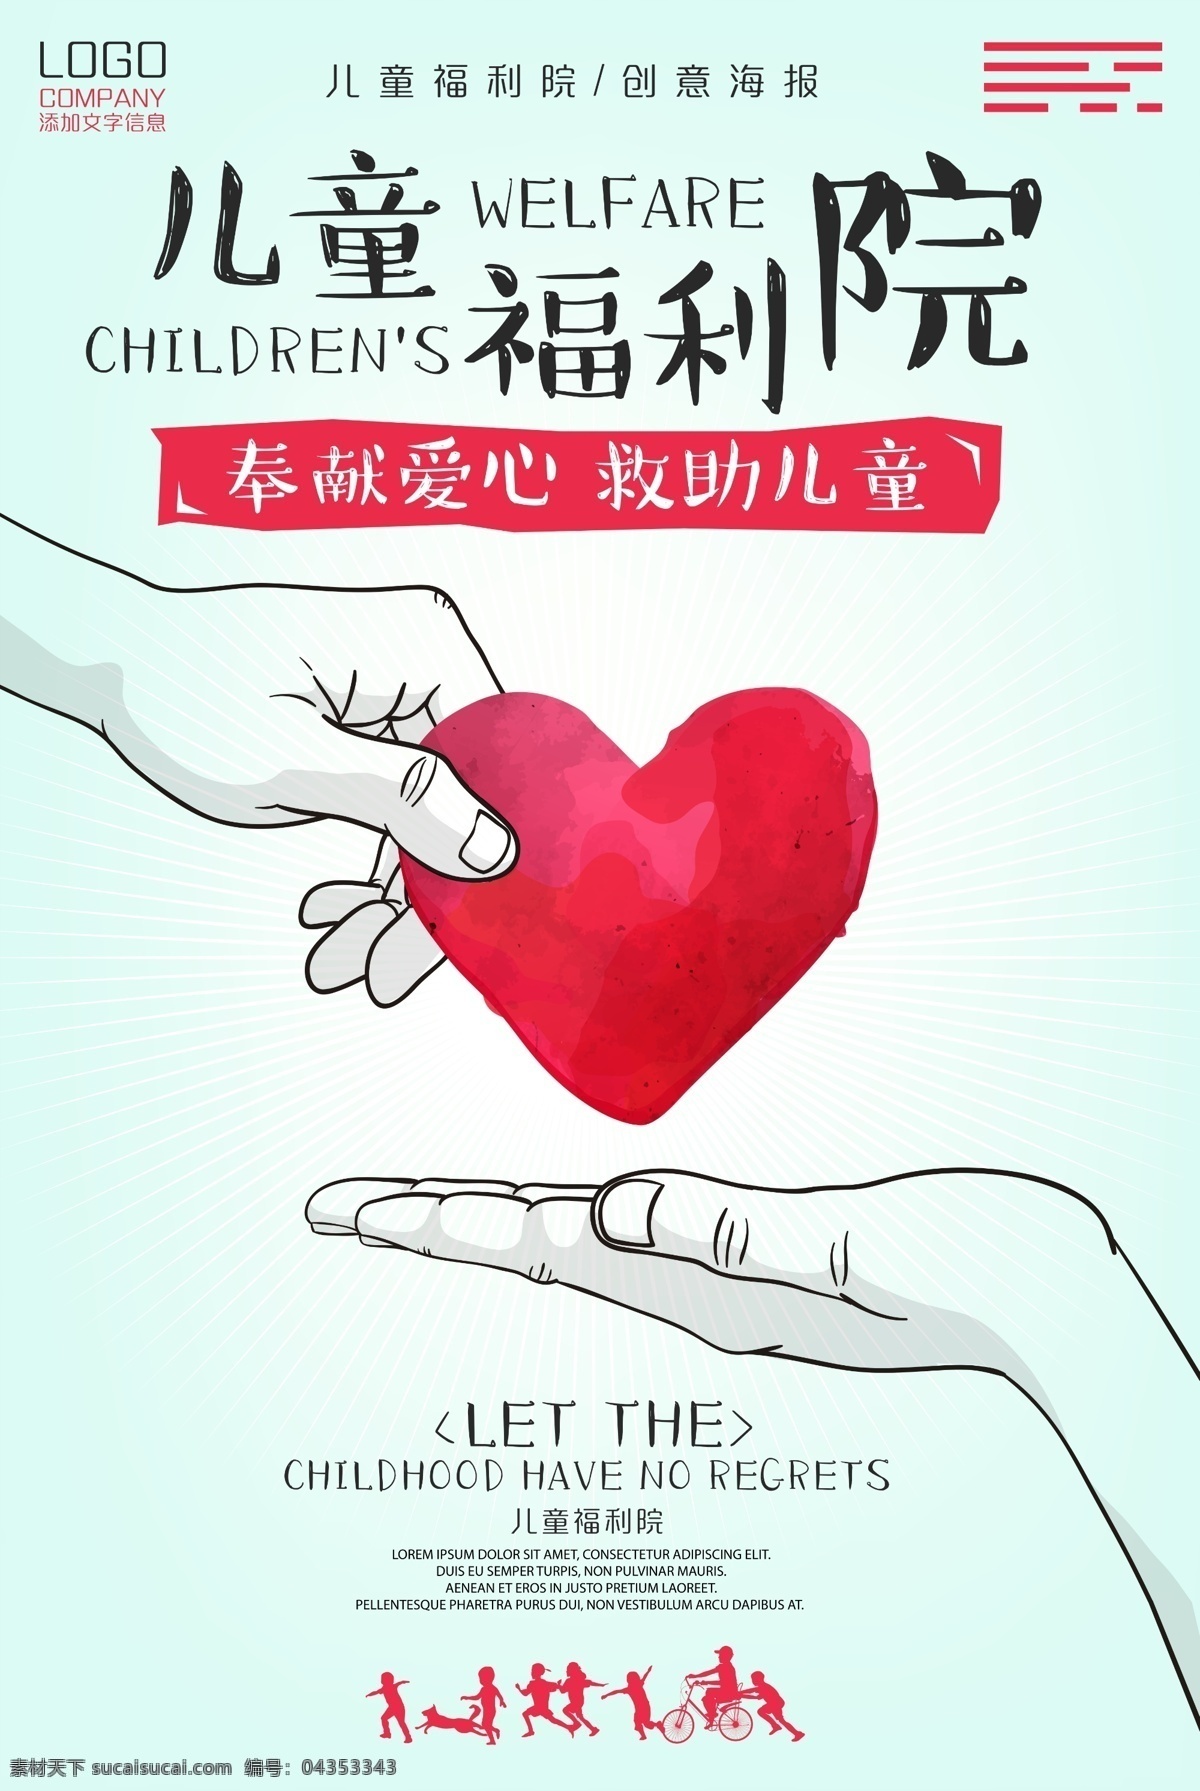 儿童福利院 海报 儿童 福利院 公益海报 孩子 奉献 爱心 救助 创意海报 psd文件